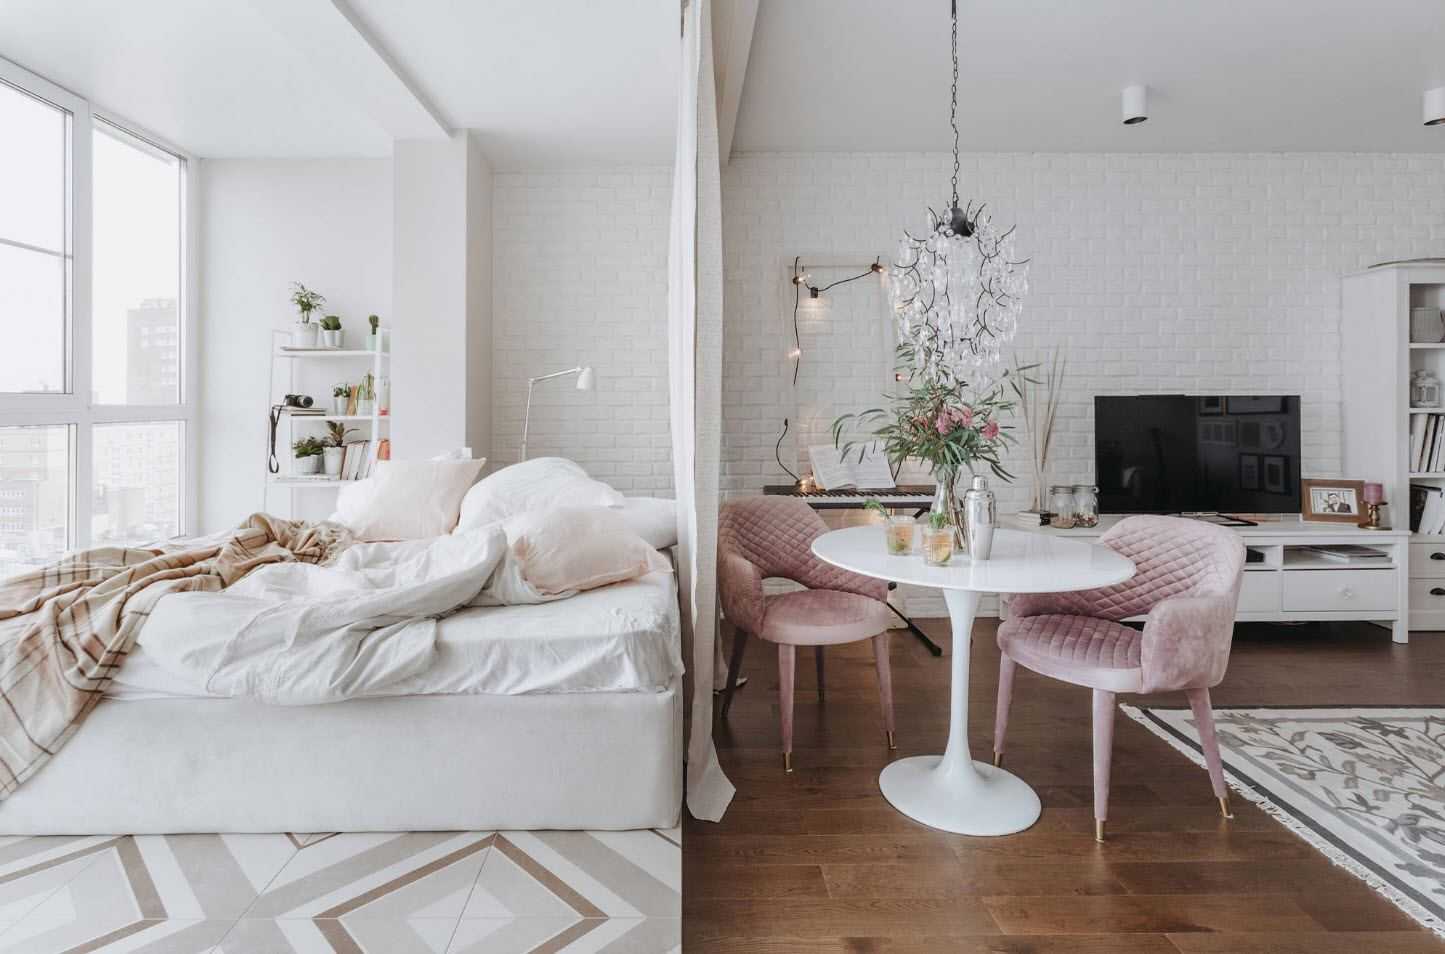 Как разделить комнату на две зоны спальня и гостиная фото: зонирование интерьера, идеи и варианты